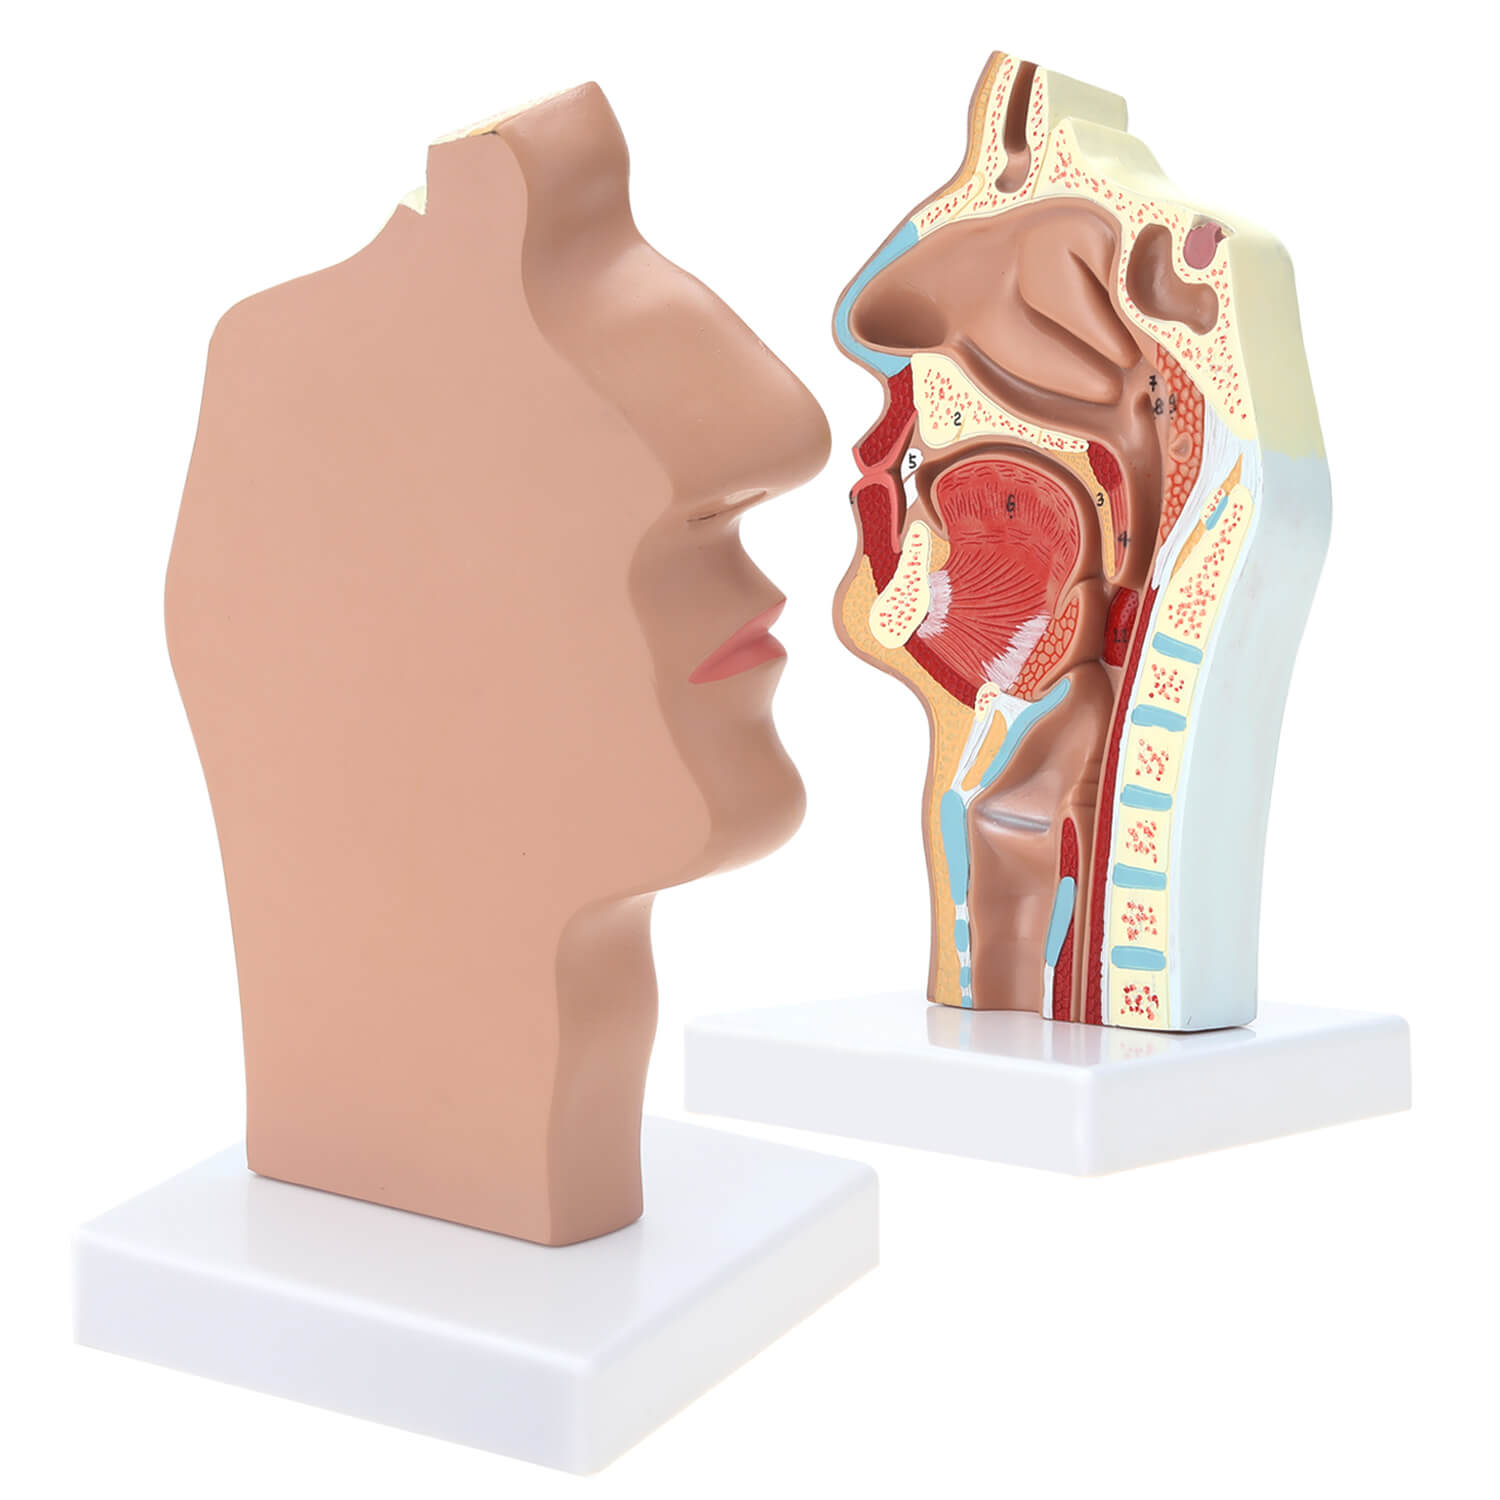 RONTEN Human Nasal Cavity Throat Anatomical Medical Teaching Model